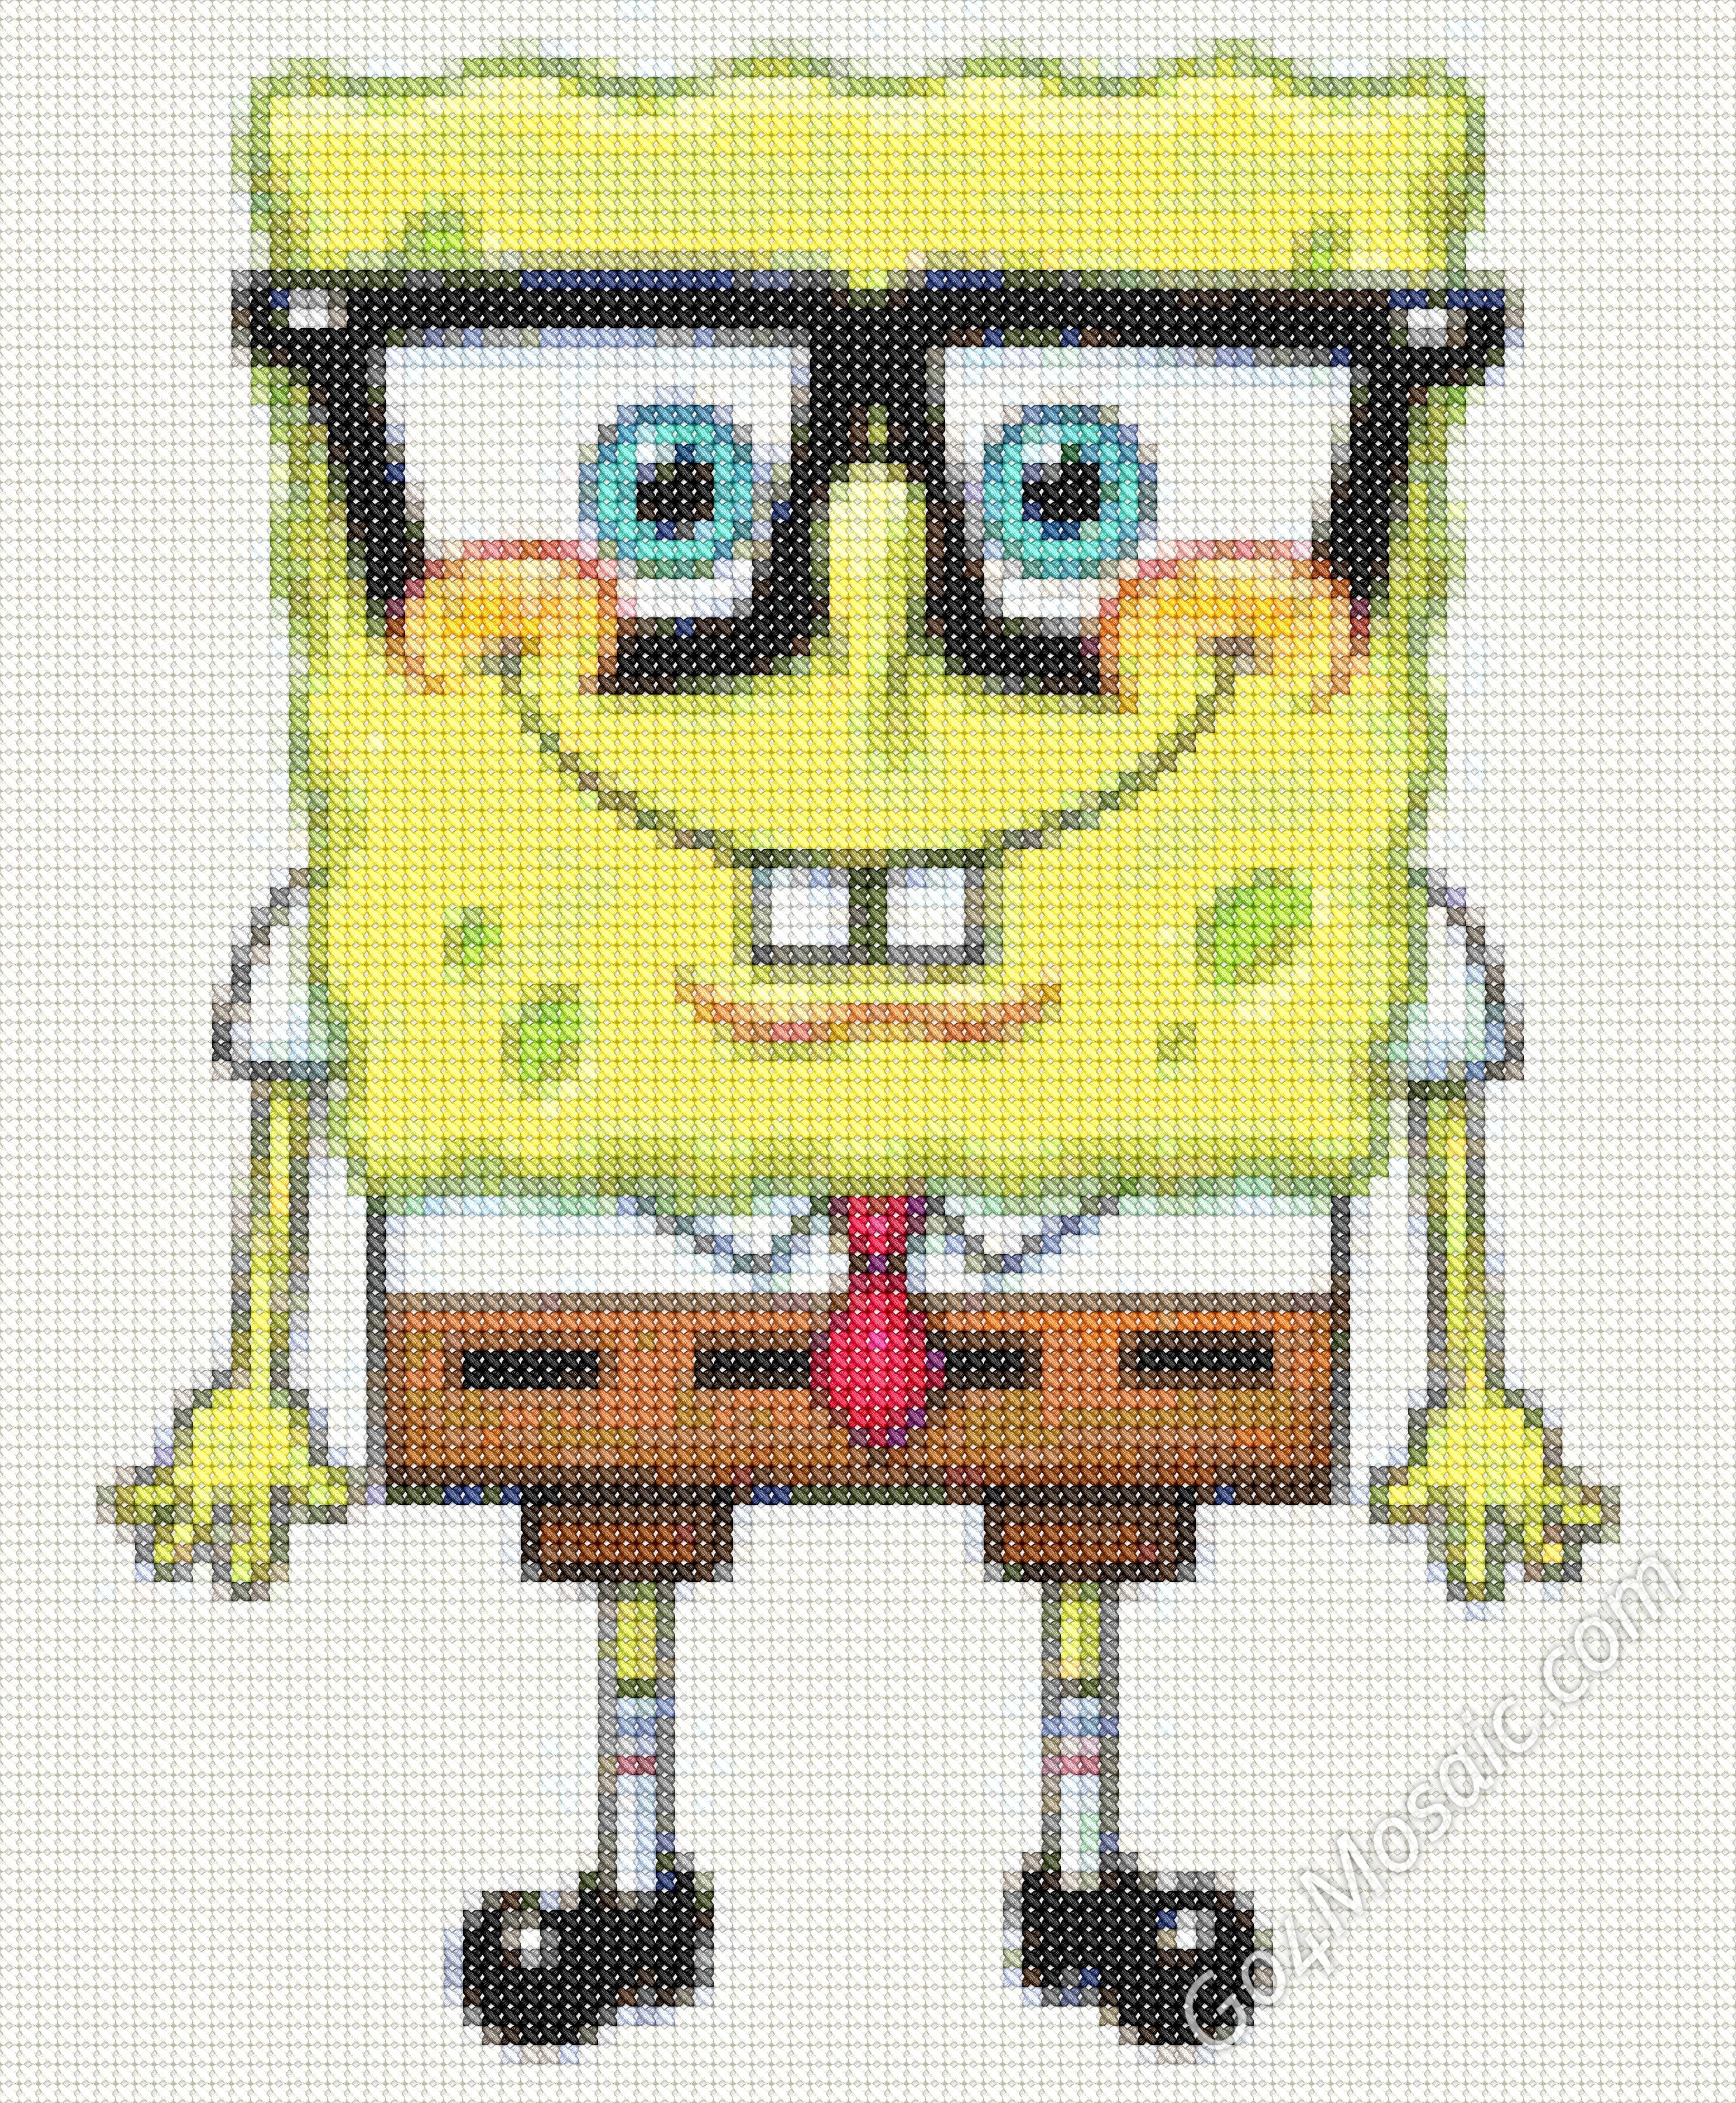 Cross-stitched Spongebob Squarepants mosaic